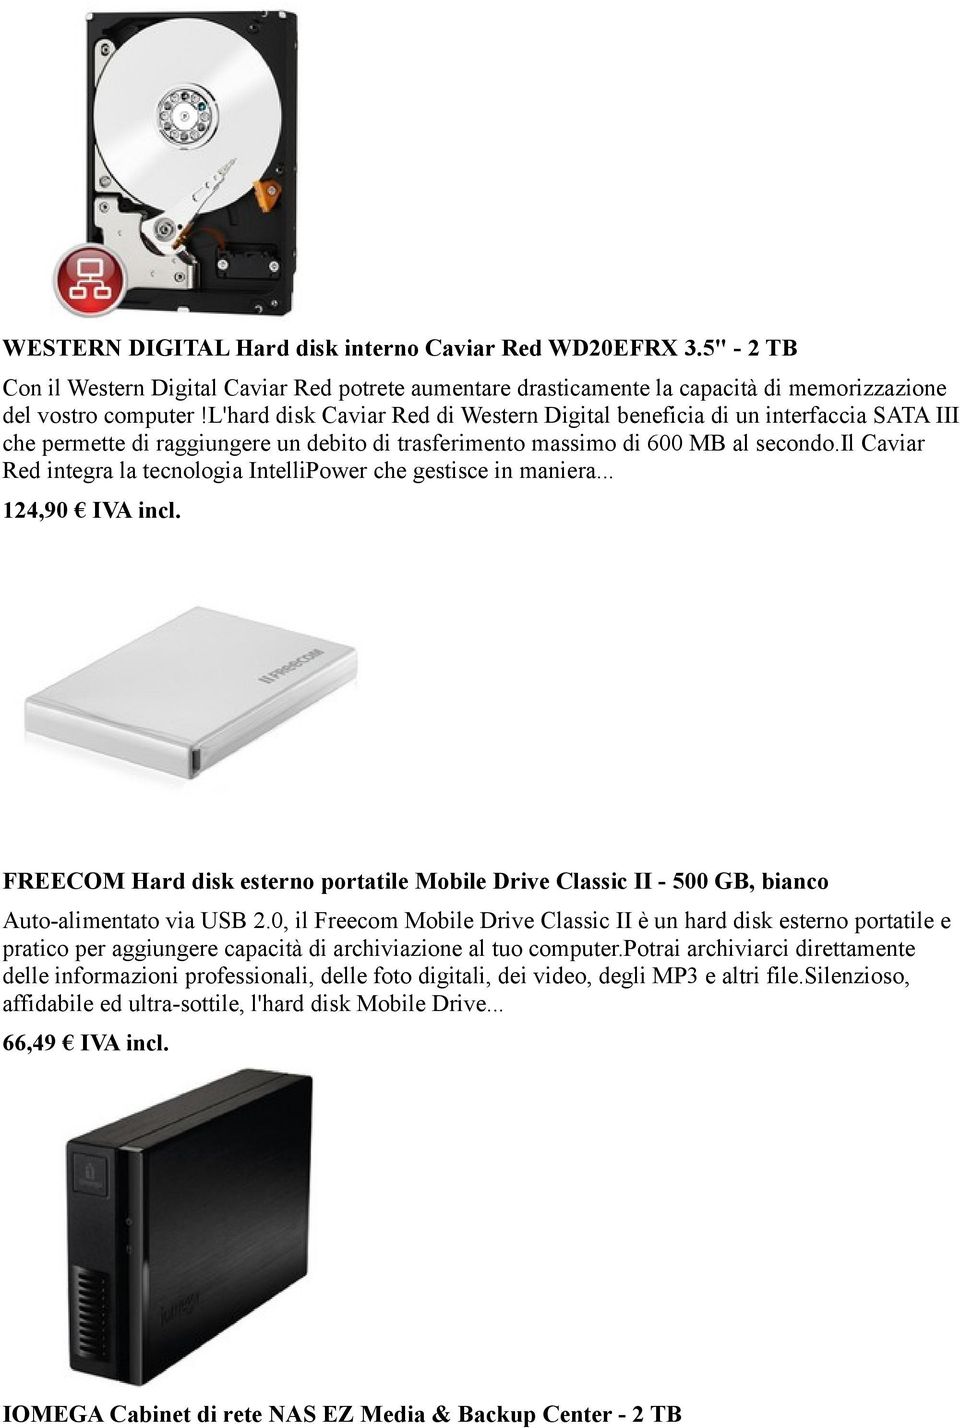 il Caviar Red integra la tecnologia IntelliPower che gestisce in maniera... 124,90 IVA incl. FREECOM Hard disk esterno portatile Mobile Drive Classic II - 500 GB, bianco Auto-alimentato via USB 2.